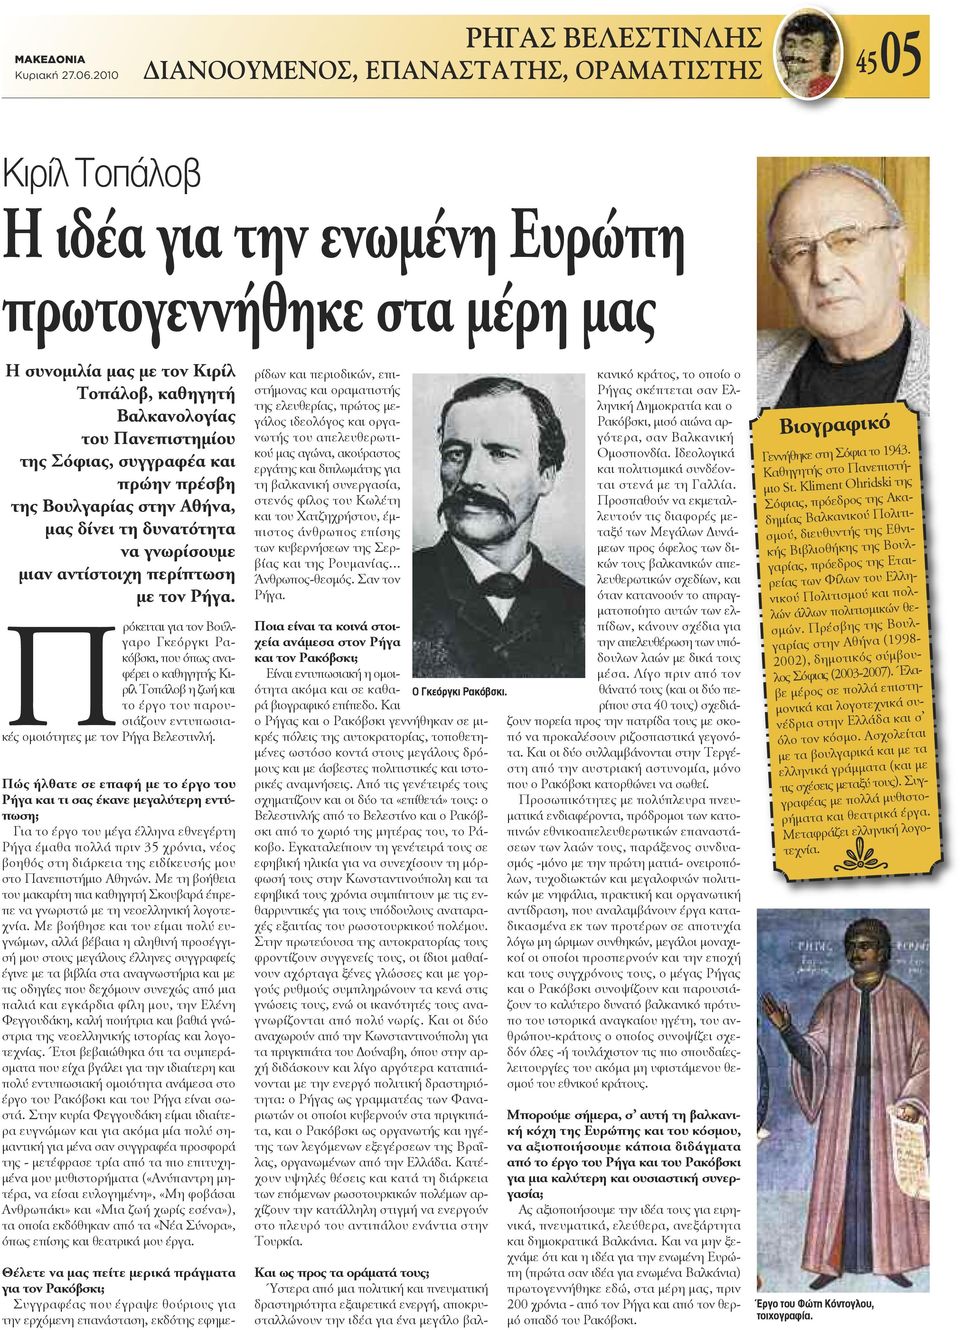 Πρόκειται για τον Βούλγαρο Γκεόργκι Ρακόβσκι, που όπως αναφέρει ο καθηγητής Κιρίλ Τοπάλοβ η ζωή και το έργο του παρουσιάζουν εντυπωσιακές ομοιότητες με τον Ρήγα Βελεστινλή.